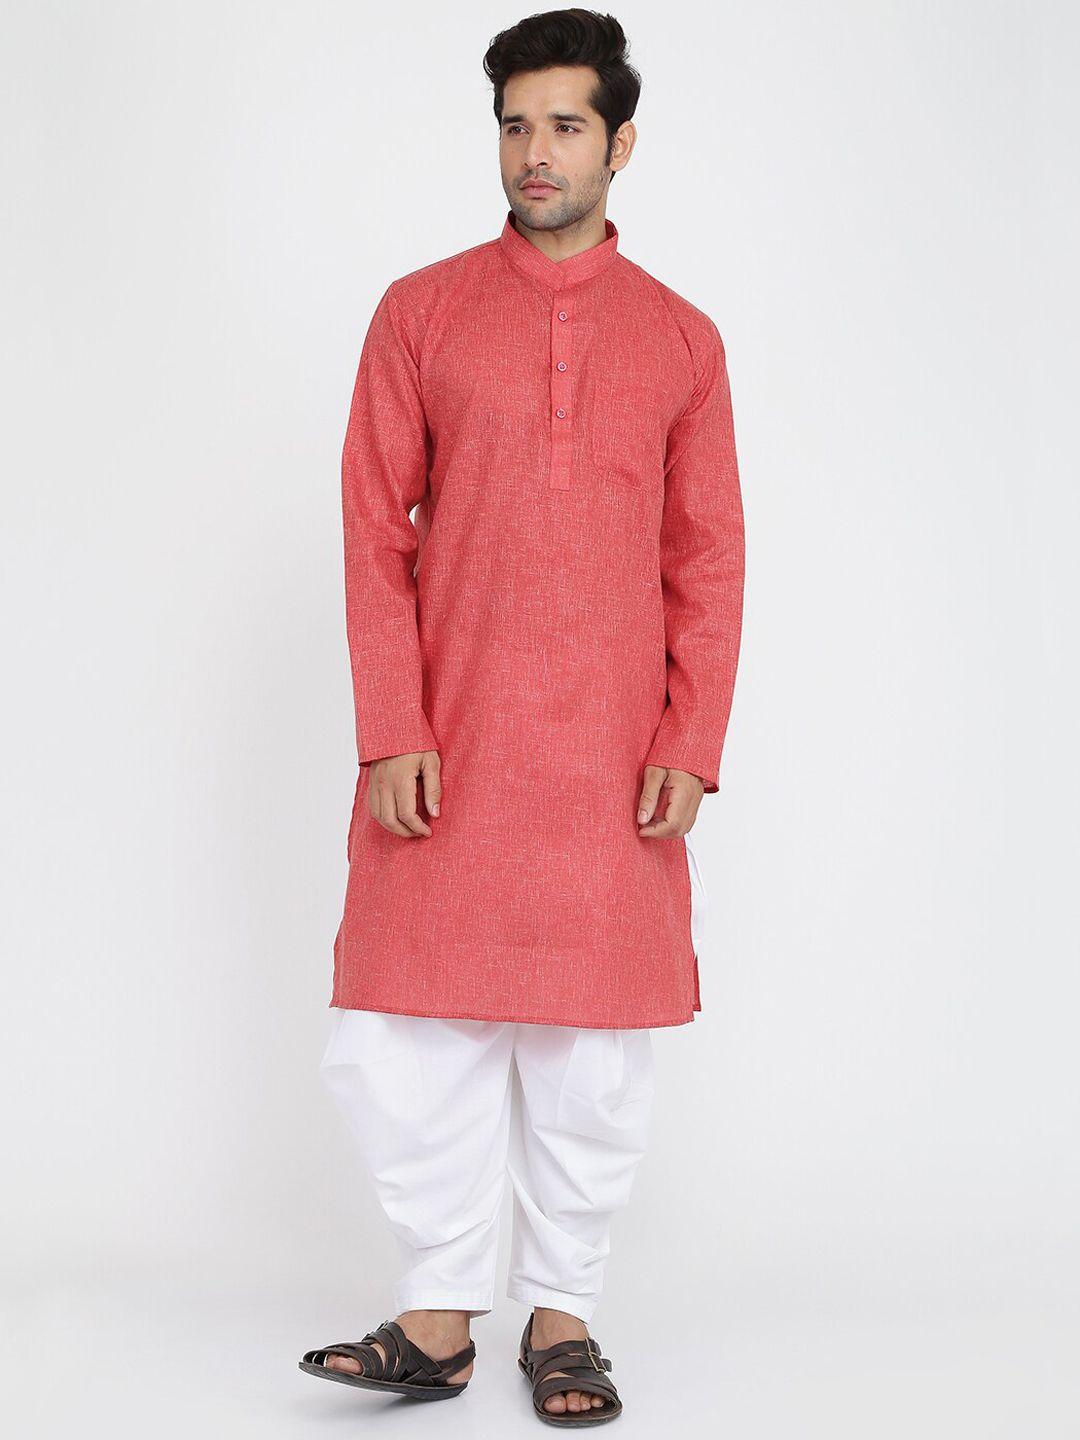 royal kurta mandarin collar regular pure cotton kurta with salwar